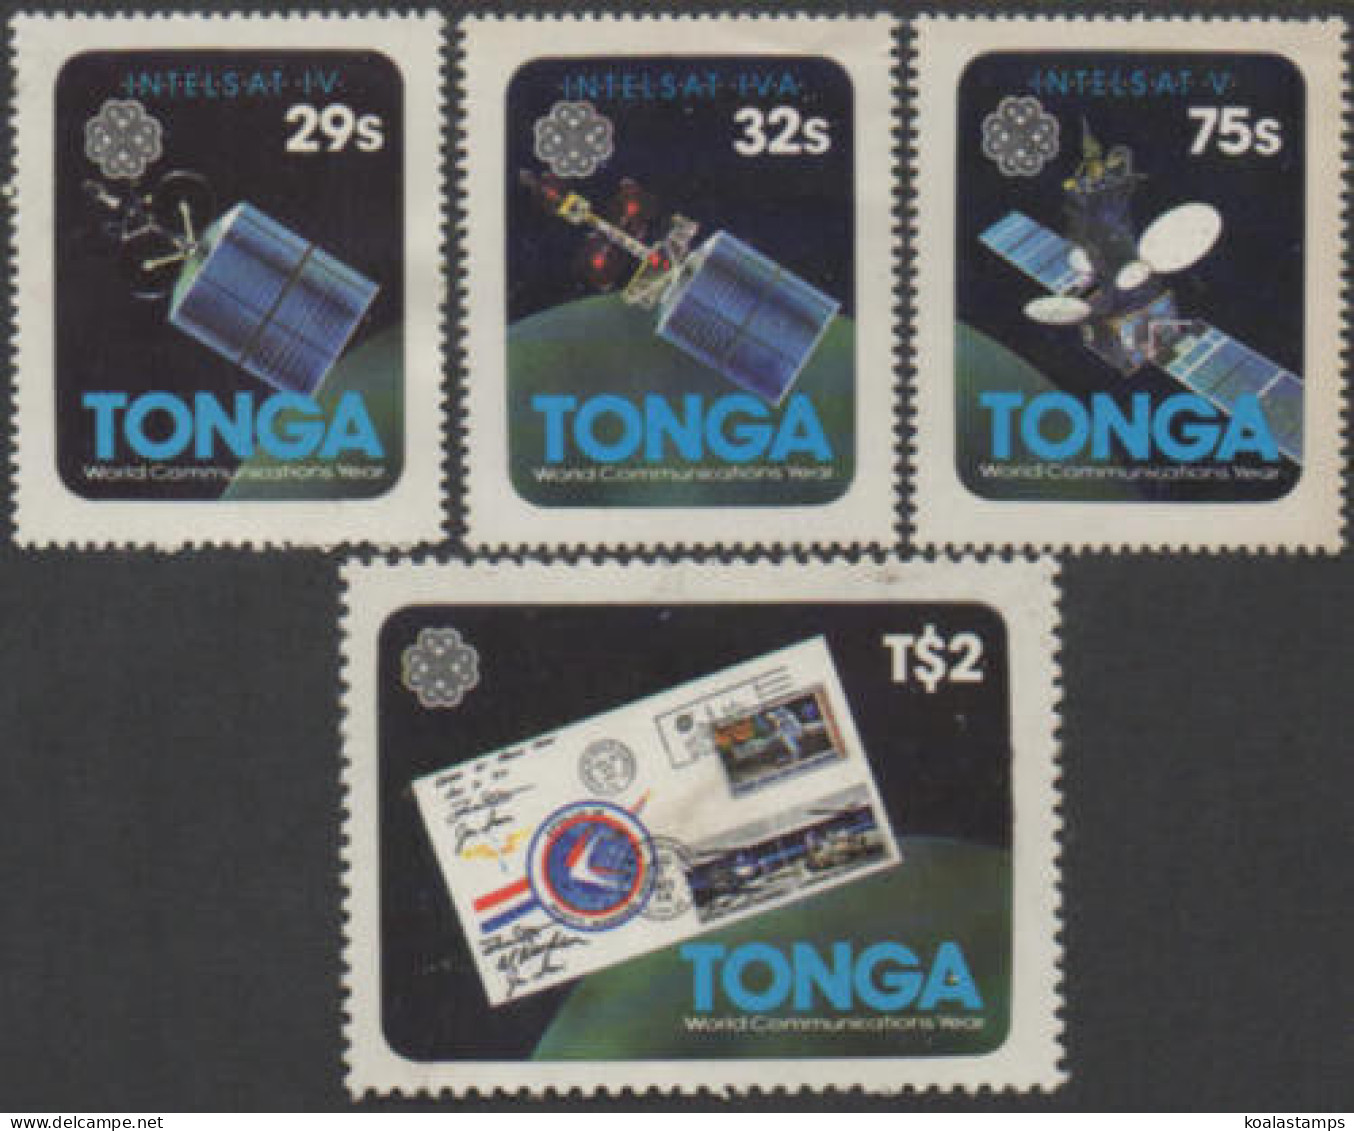 Tonga 1983 SG847-850 World Communications Year Set MNH - Tonga (1970-...)